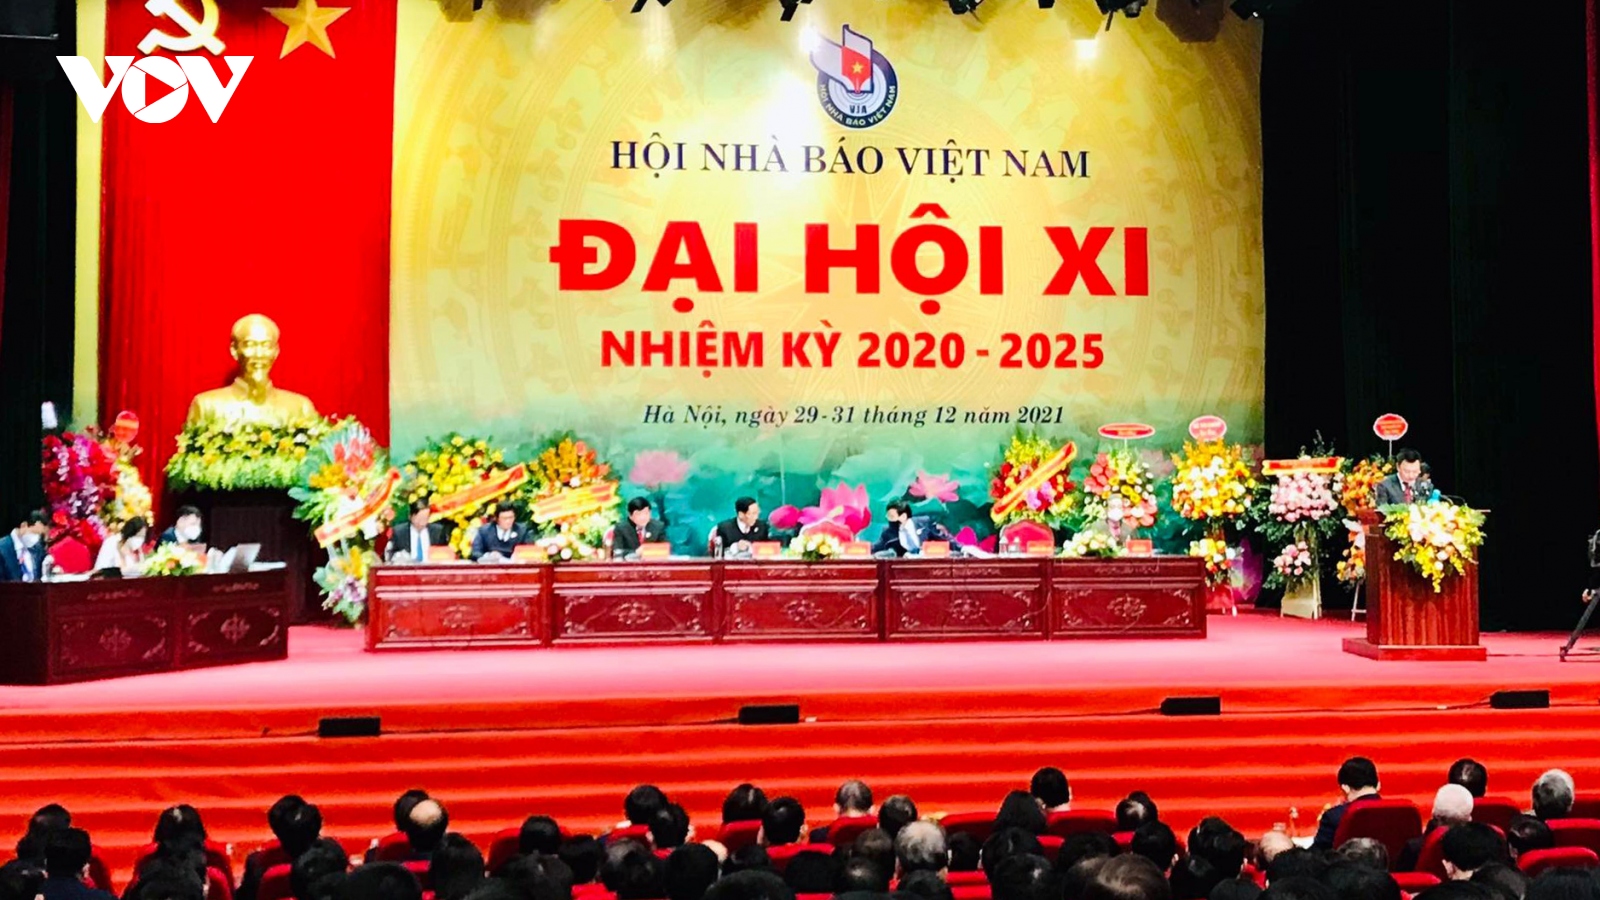 Khai mạc Đại hội đại biểu toàn quốc lần thứ XI Hội Nhà báo Việt Nam